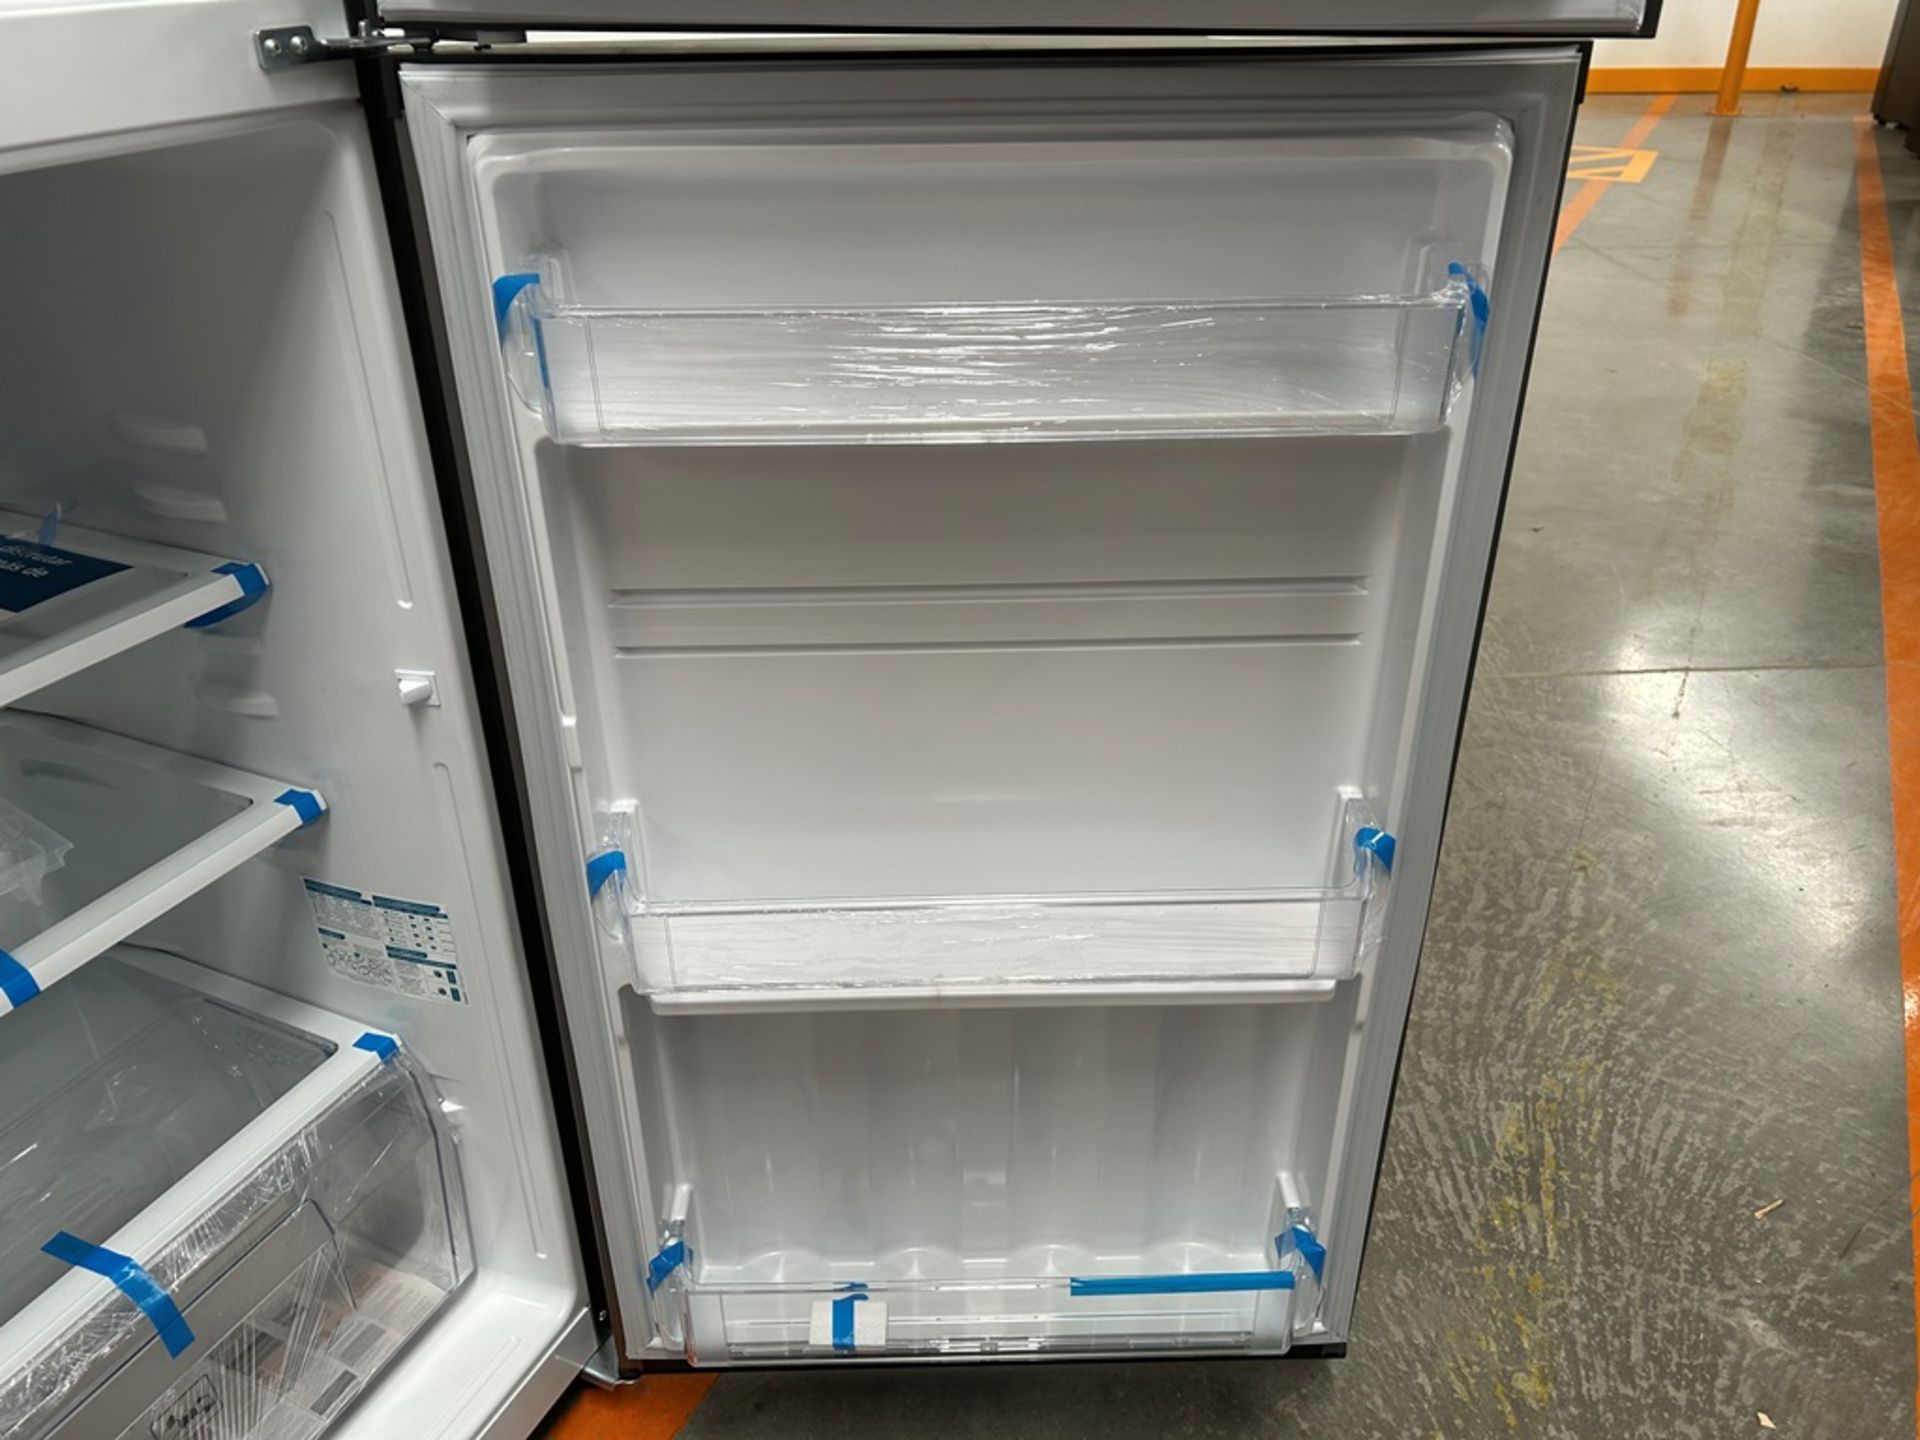 Lote de 2 refrigeradores contiene: 1 refrigerador Marca MABE, Modelo RME360FVMRMA, Serie 816455, Co - Image 15 of 18